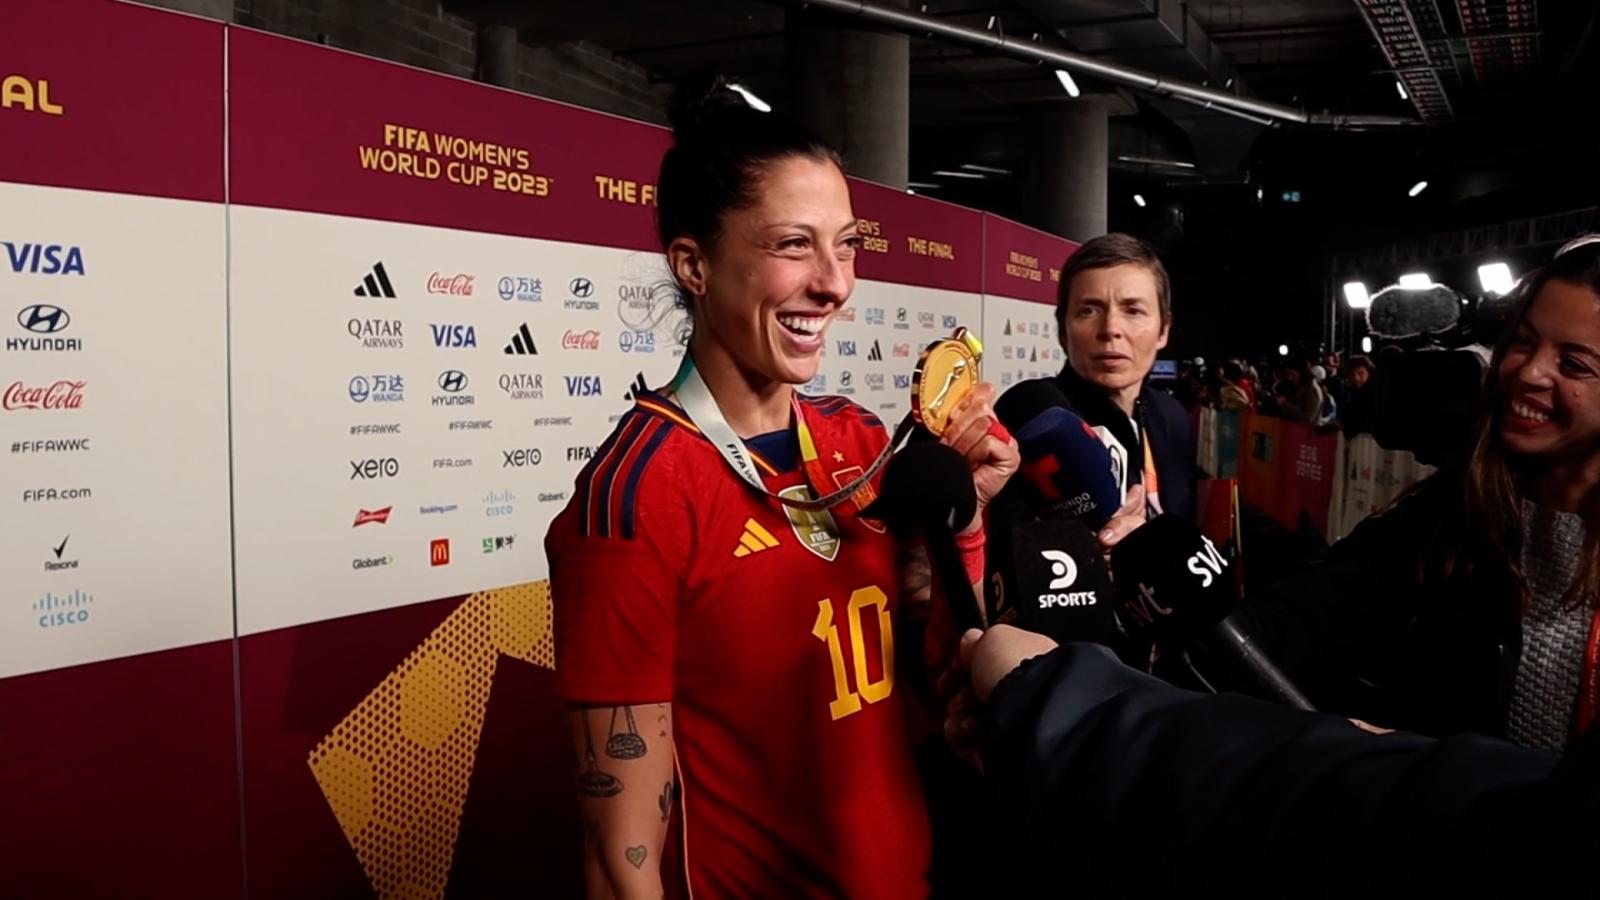 "Por todas esas mujeres que comenzaron sin ningún recurso": jugadoras
de España dedican su triunfo